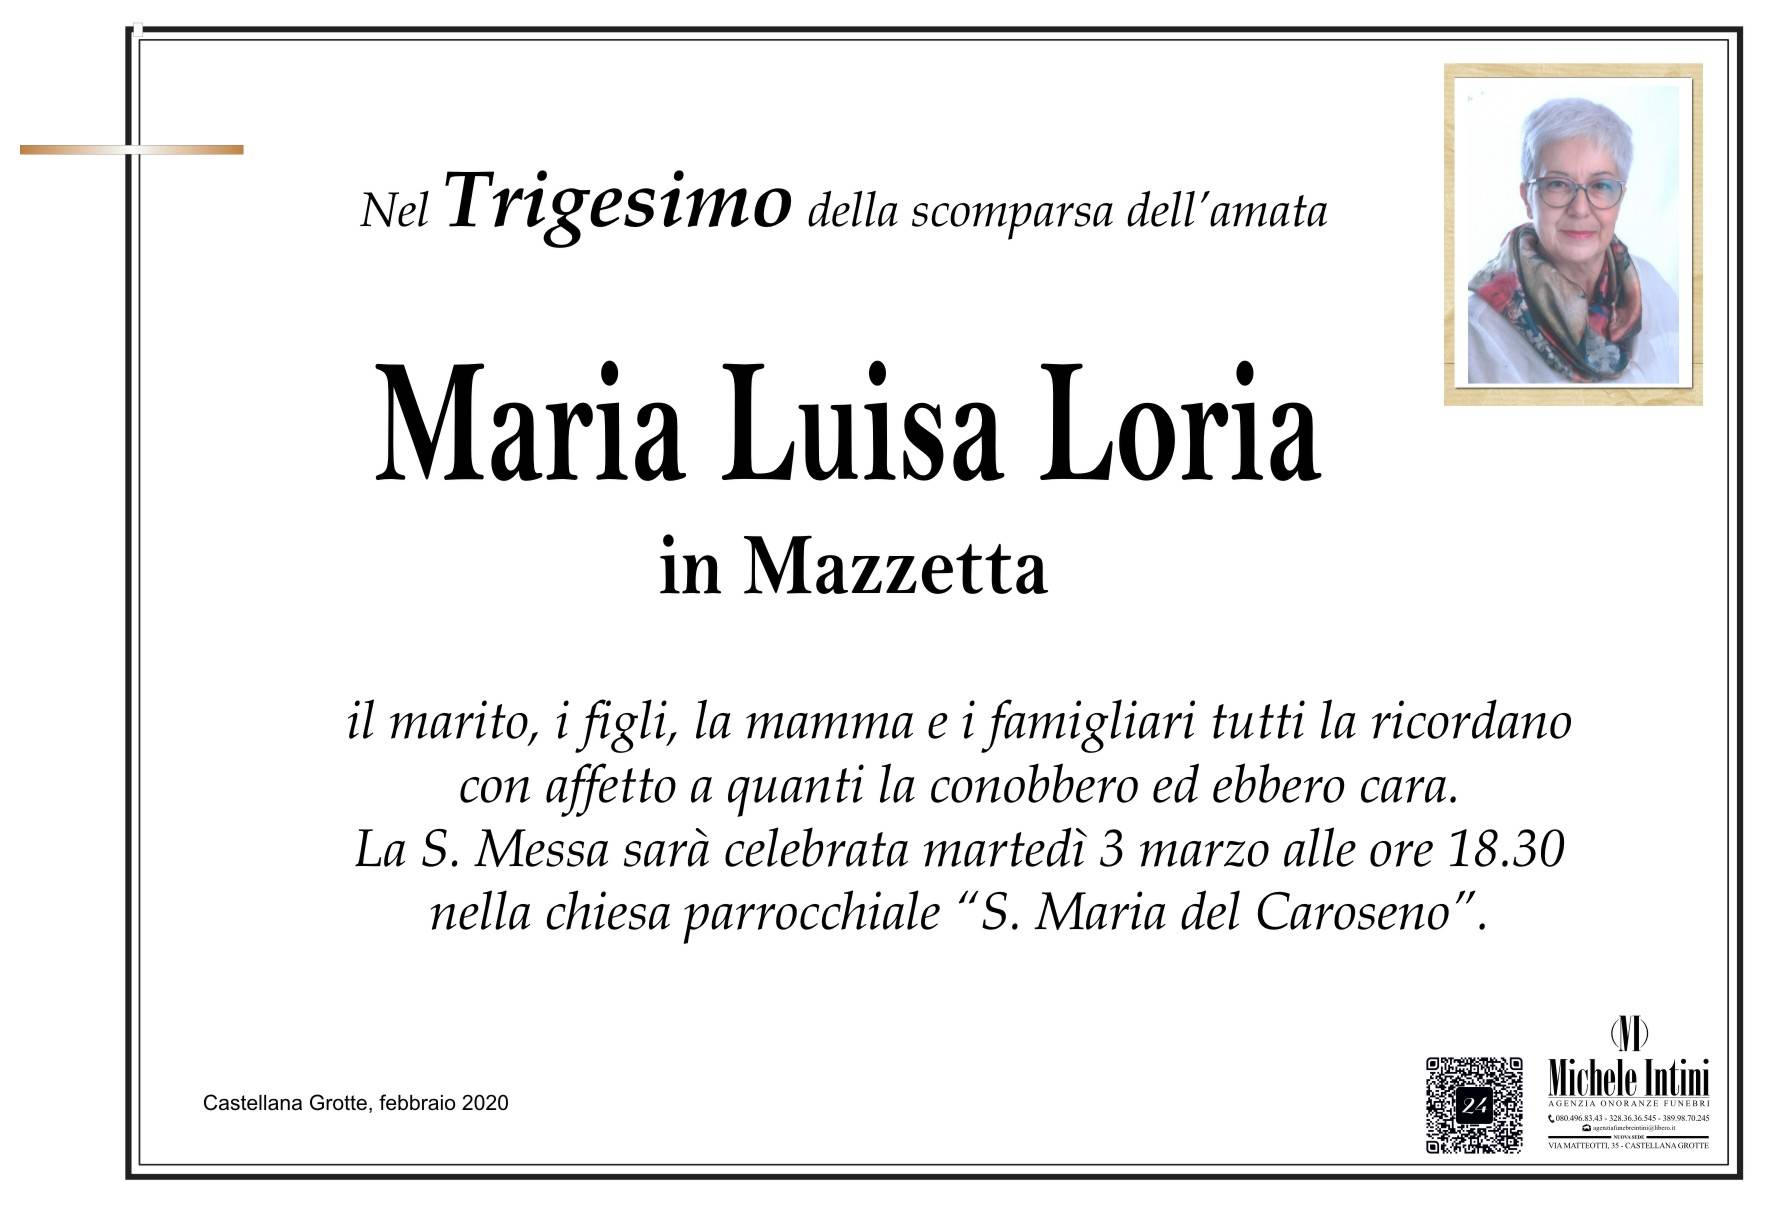 Maria Luisa Loria